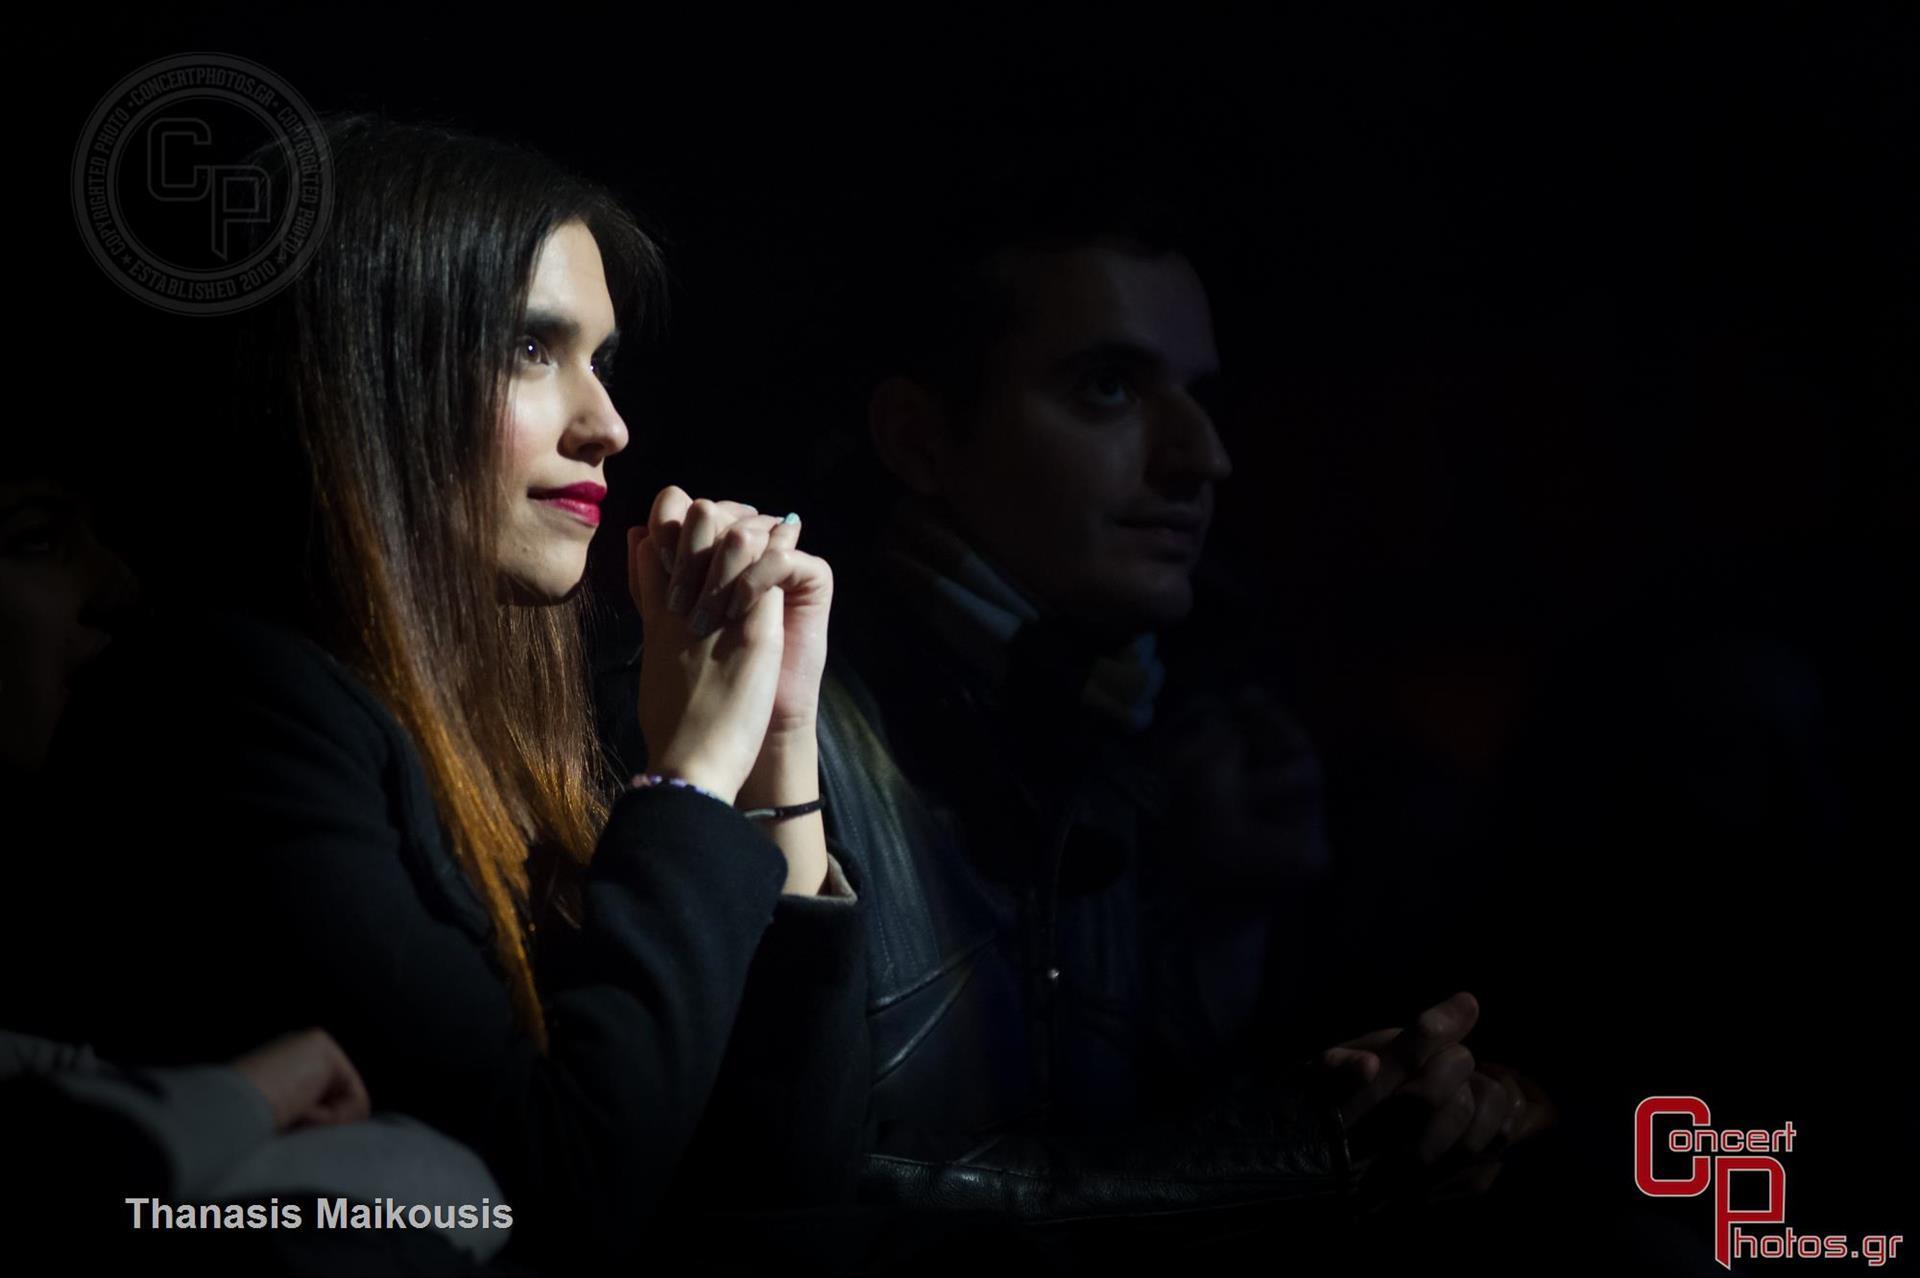 Monika-Monika photographer: Thanasis Maikousis - ConcertPhotos - 20150227_2355_22